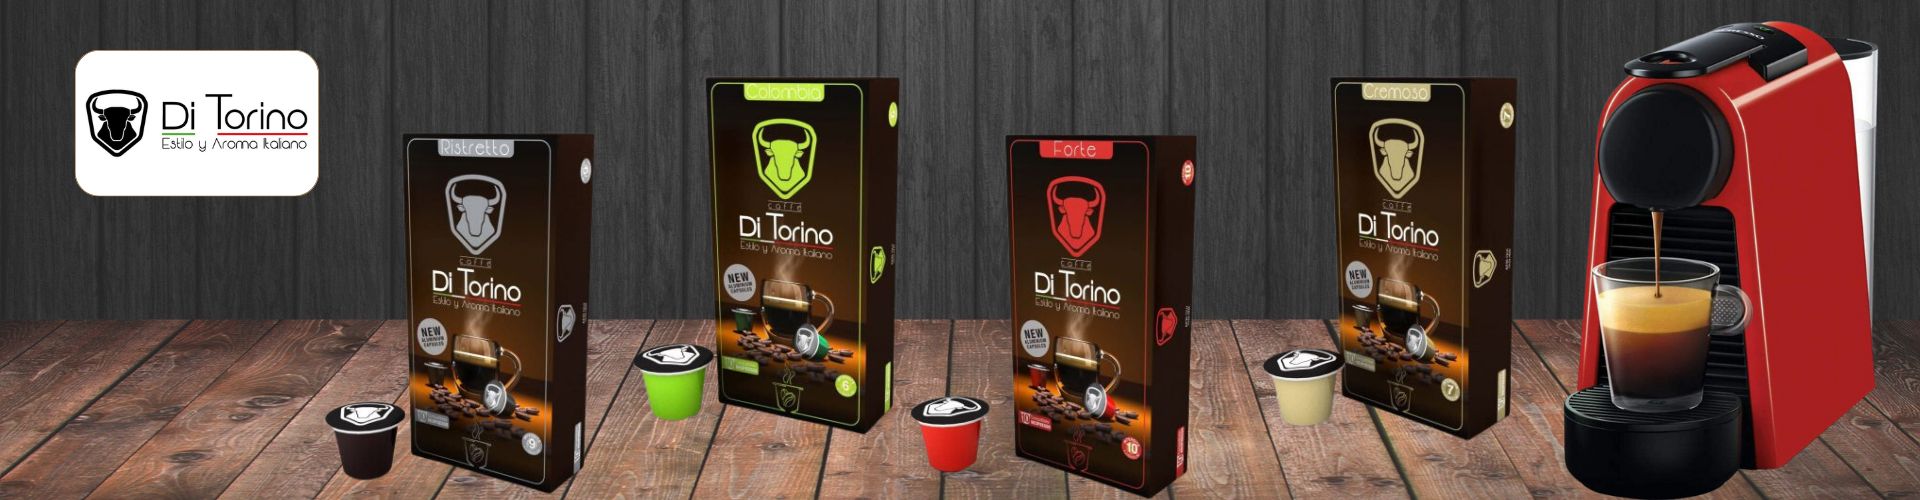 Café Ditorino, cápsulas de café para Nespresso